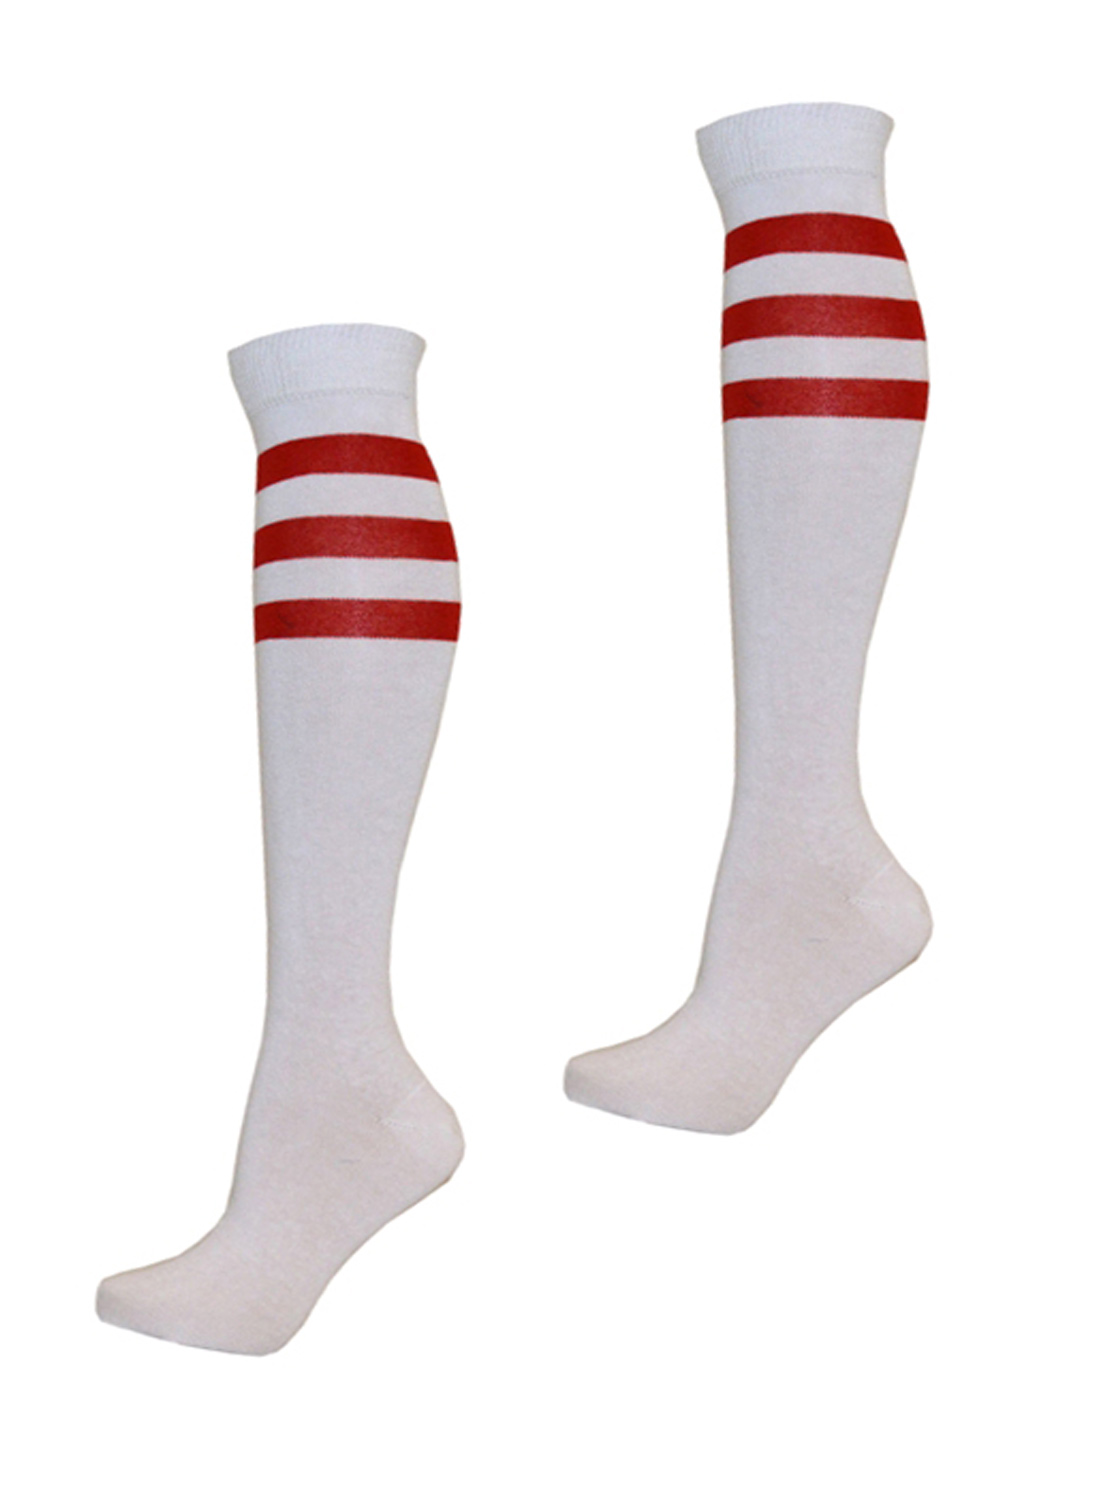 KH Sport Socks White Red Stripes